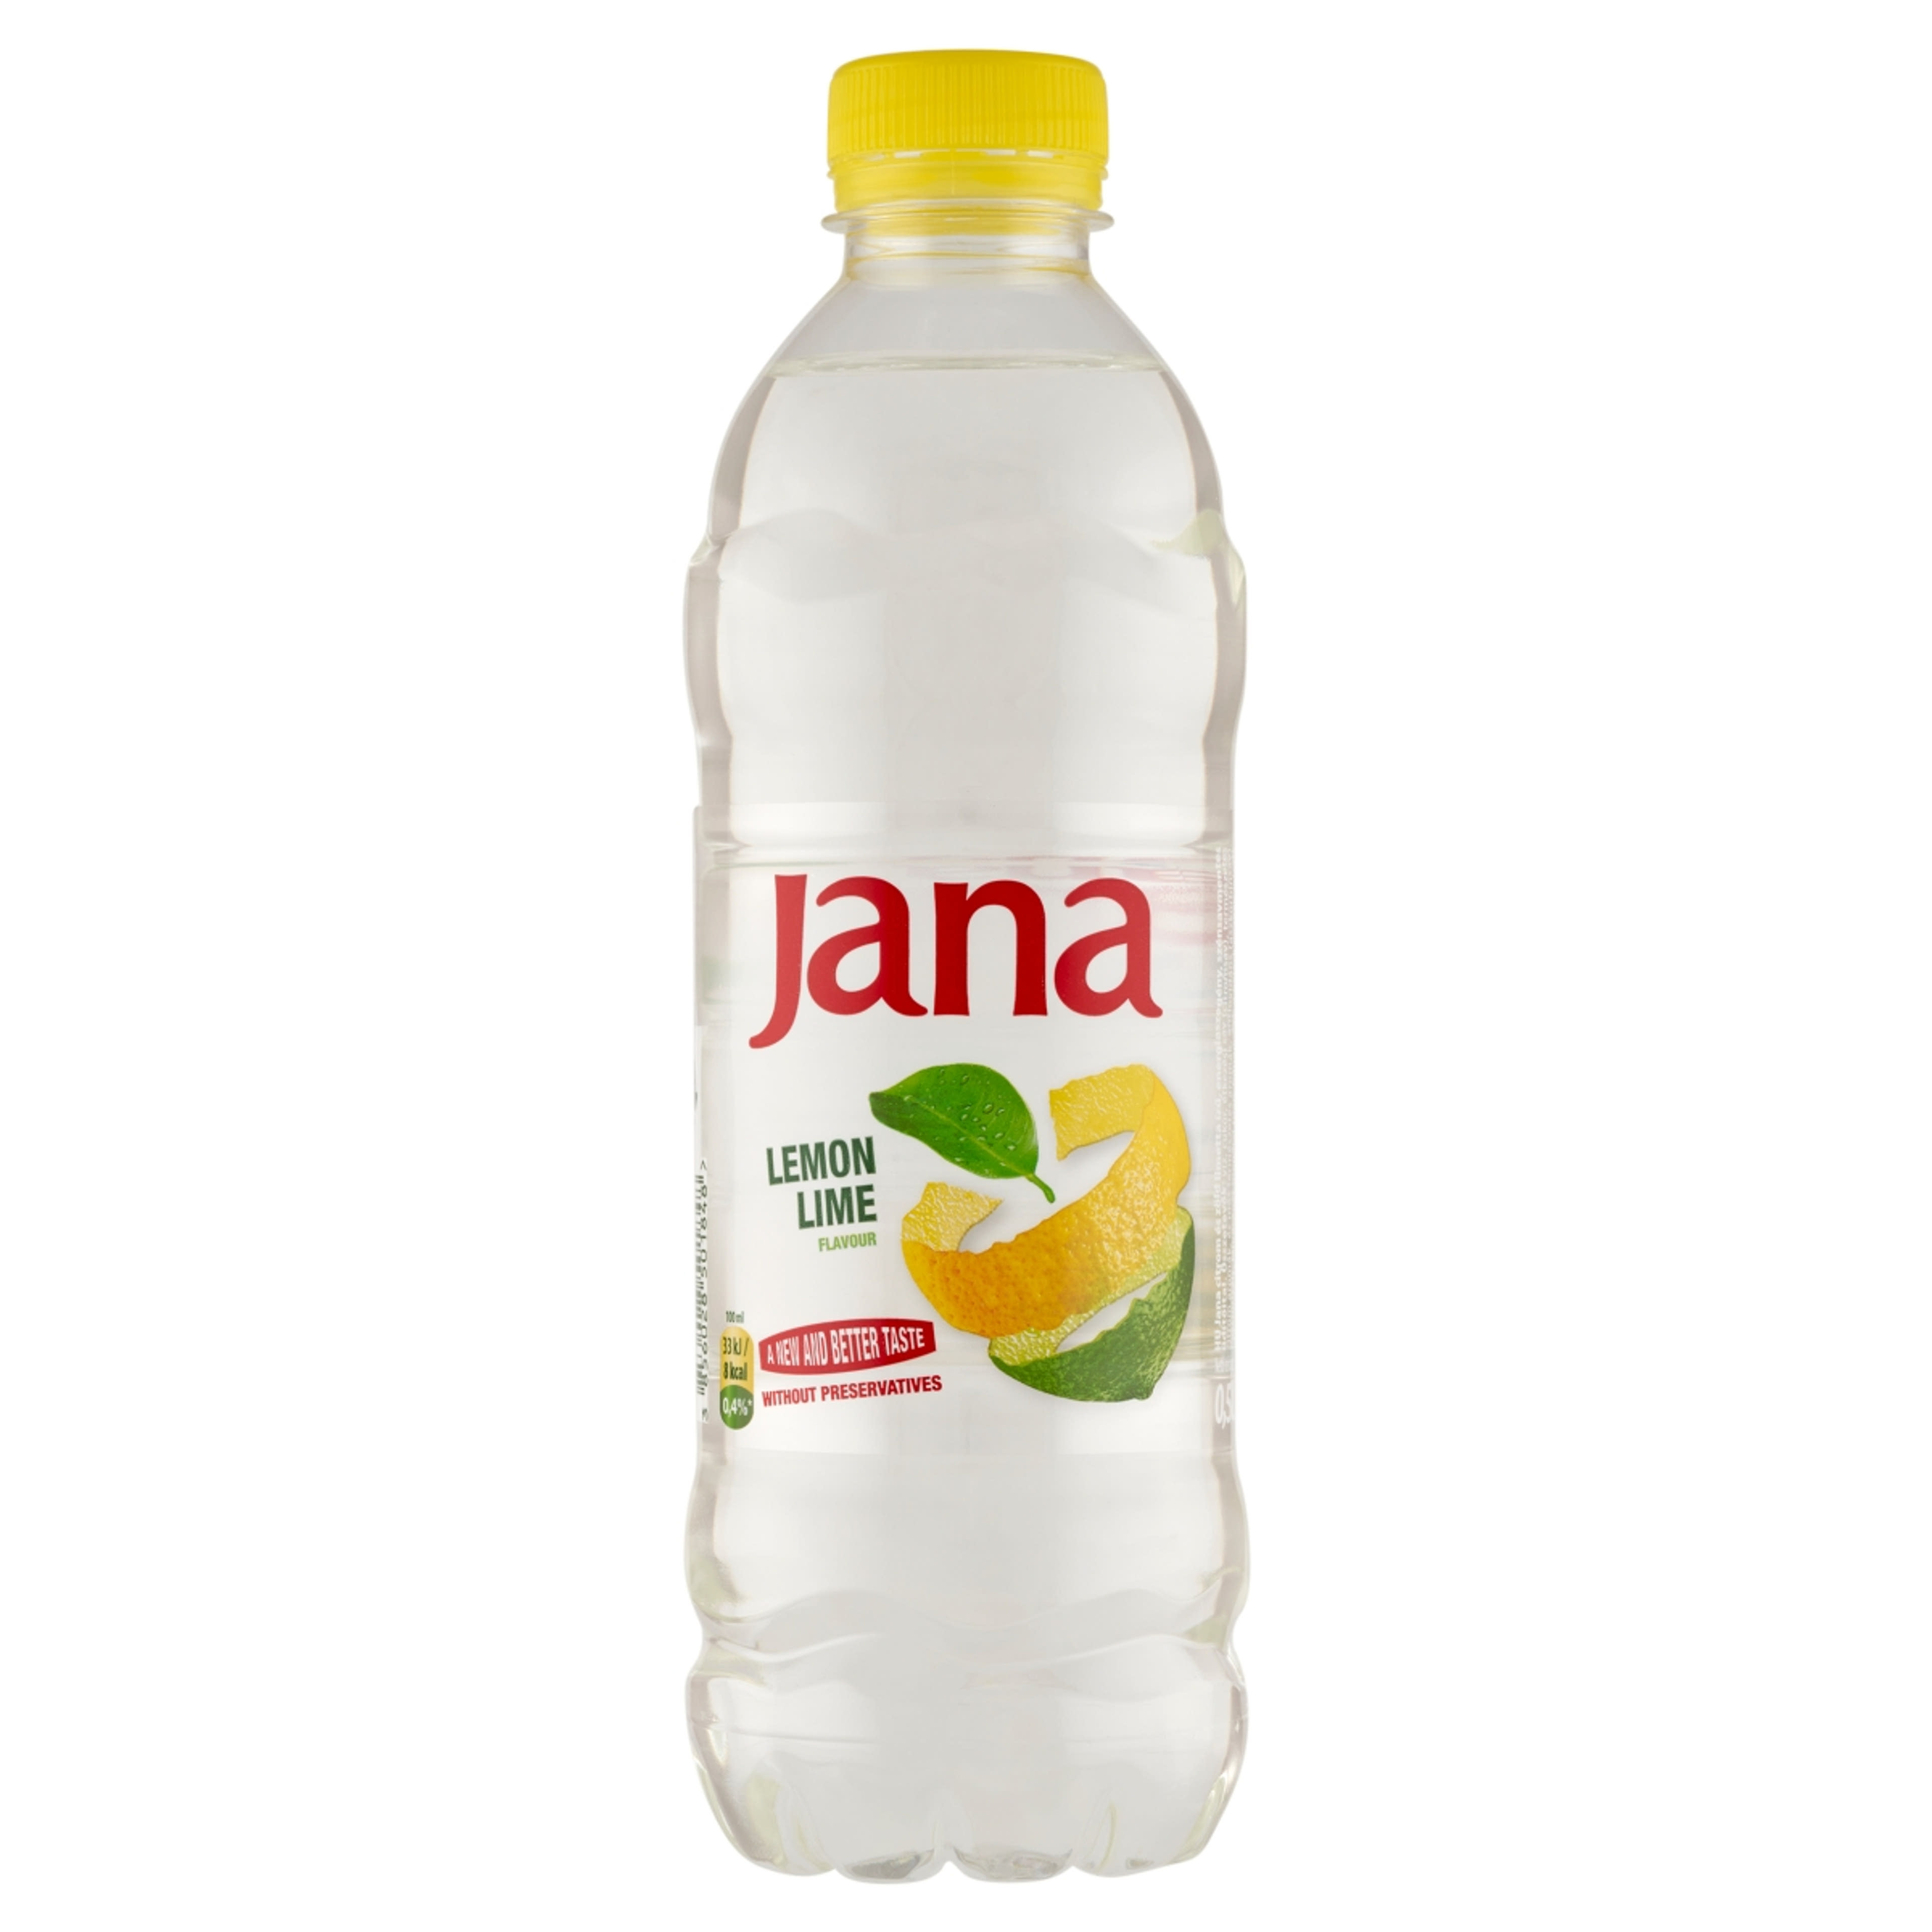 Jana ízesített szénsavmentes ásványvíz citrom-lime - 500 ml